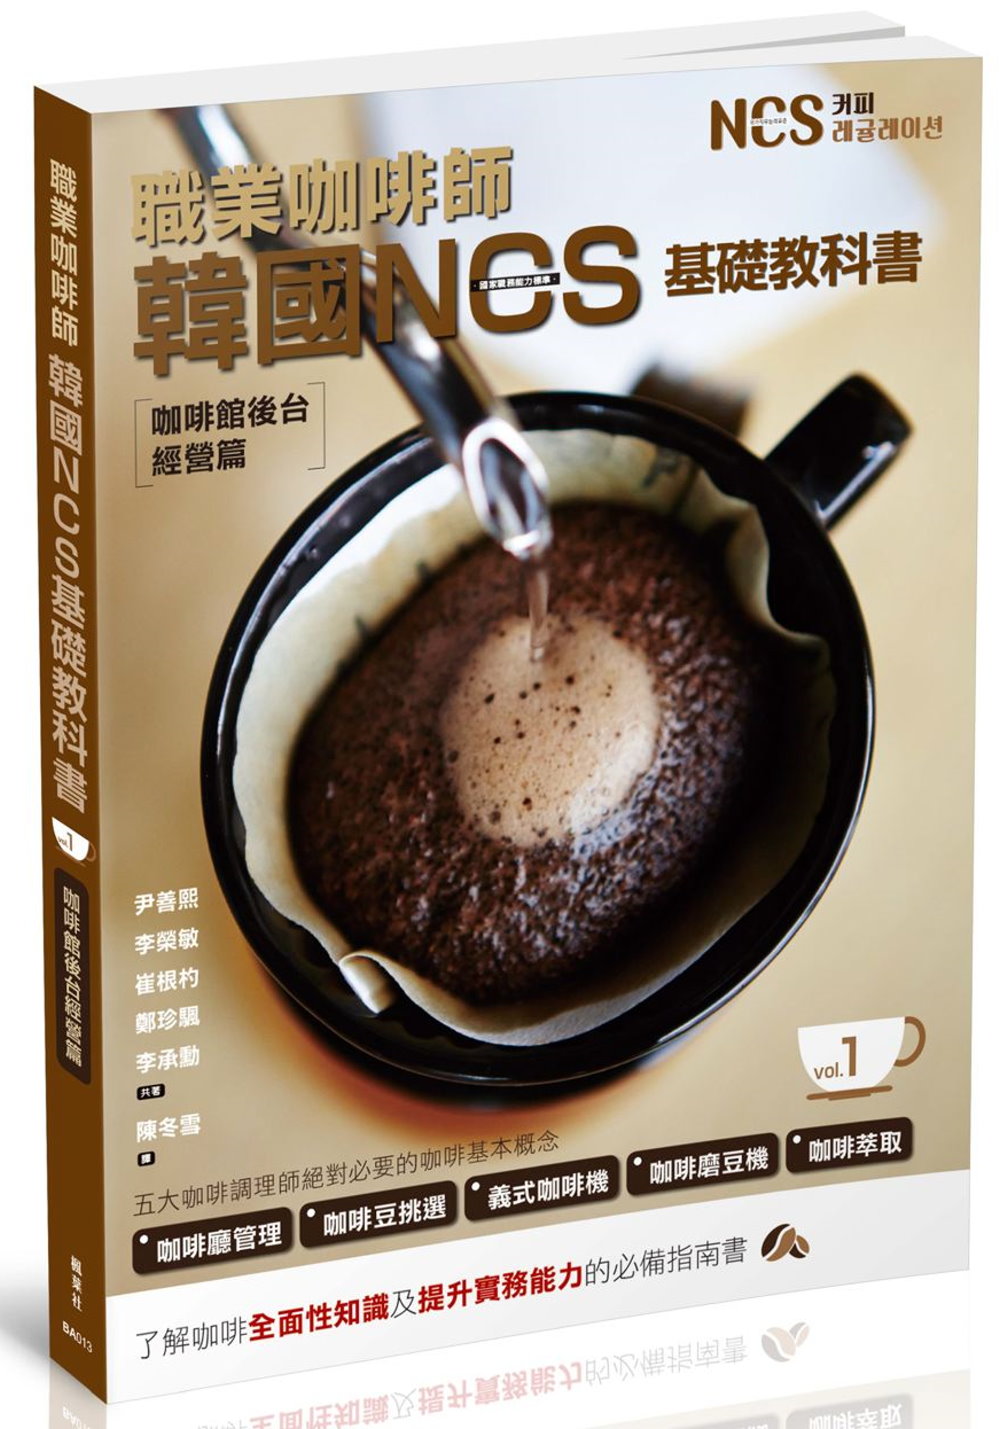 職業咖啡師  韓國NCS基礎教科書 vol.1  咖啡館後台...